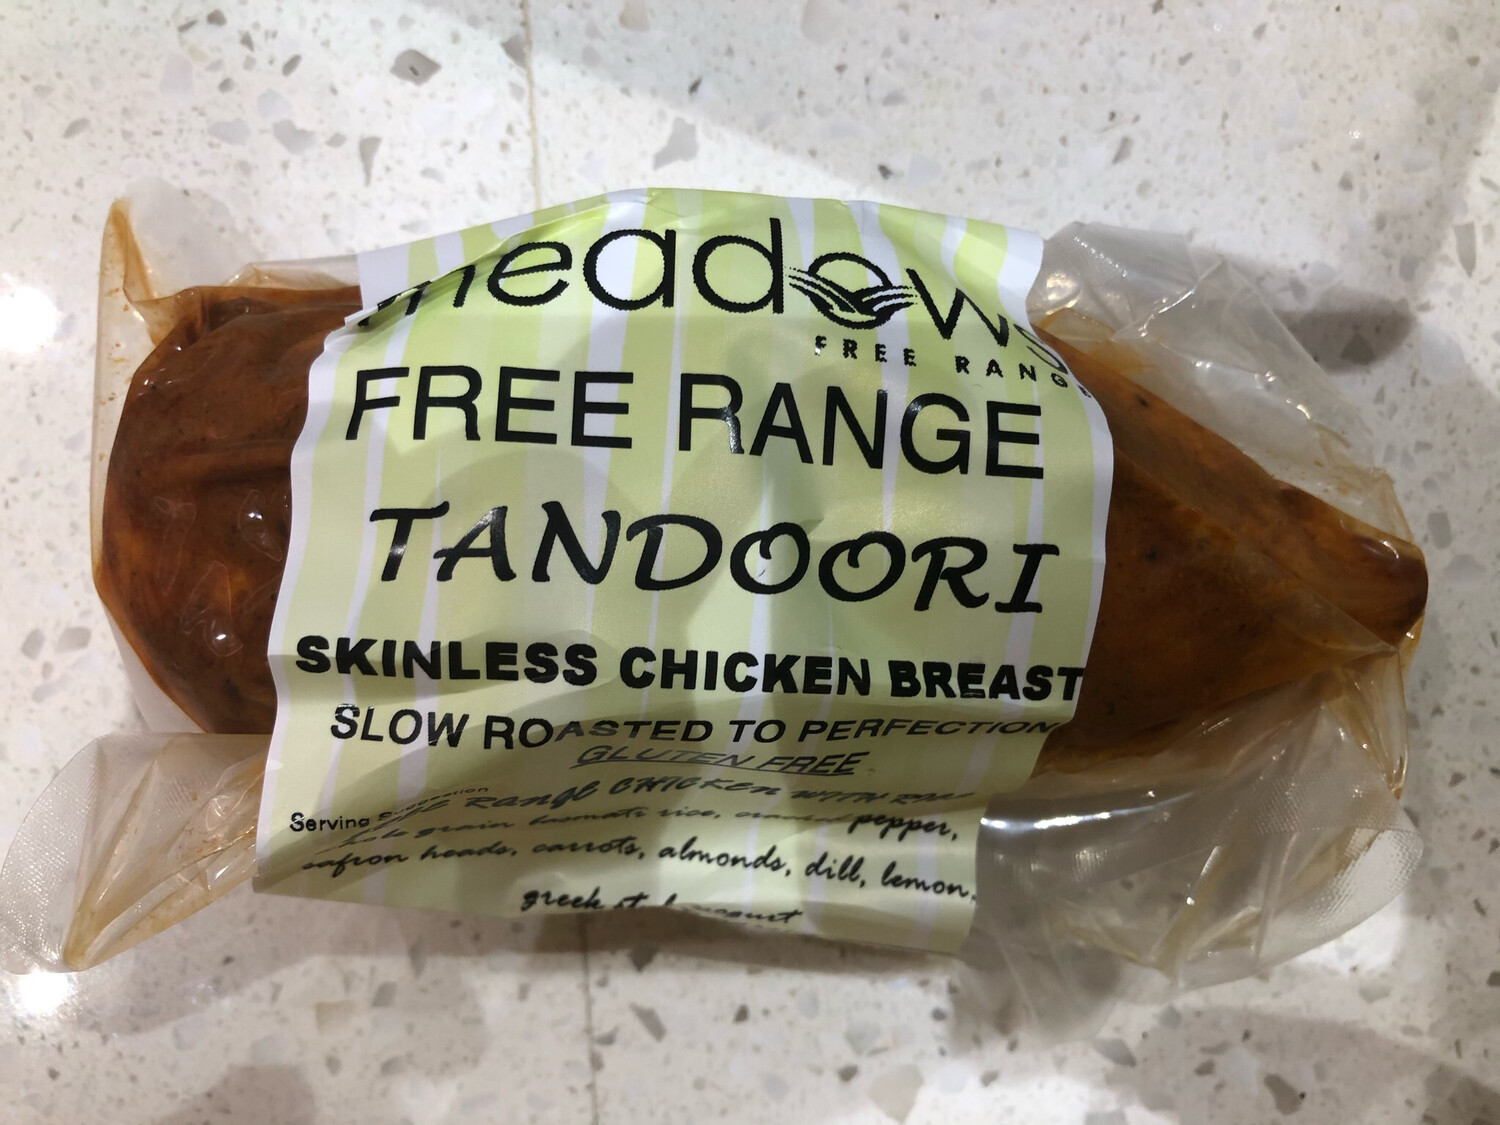 Free Range Tandoori Skinless Chicken Breast